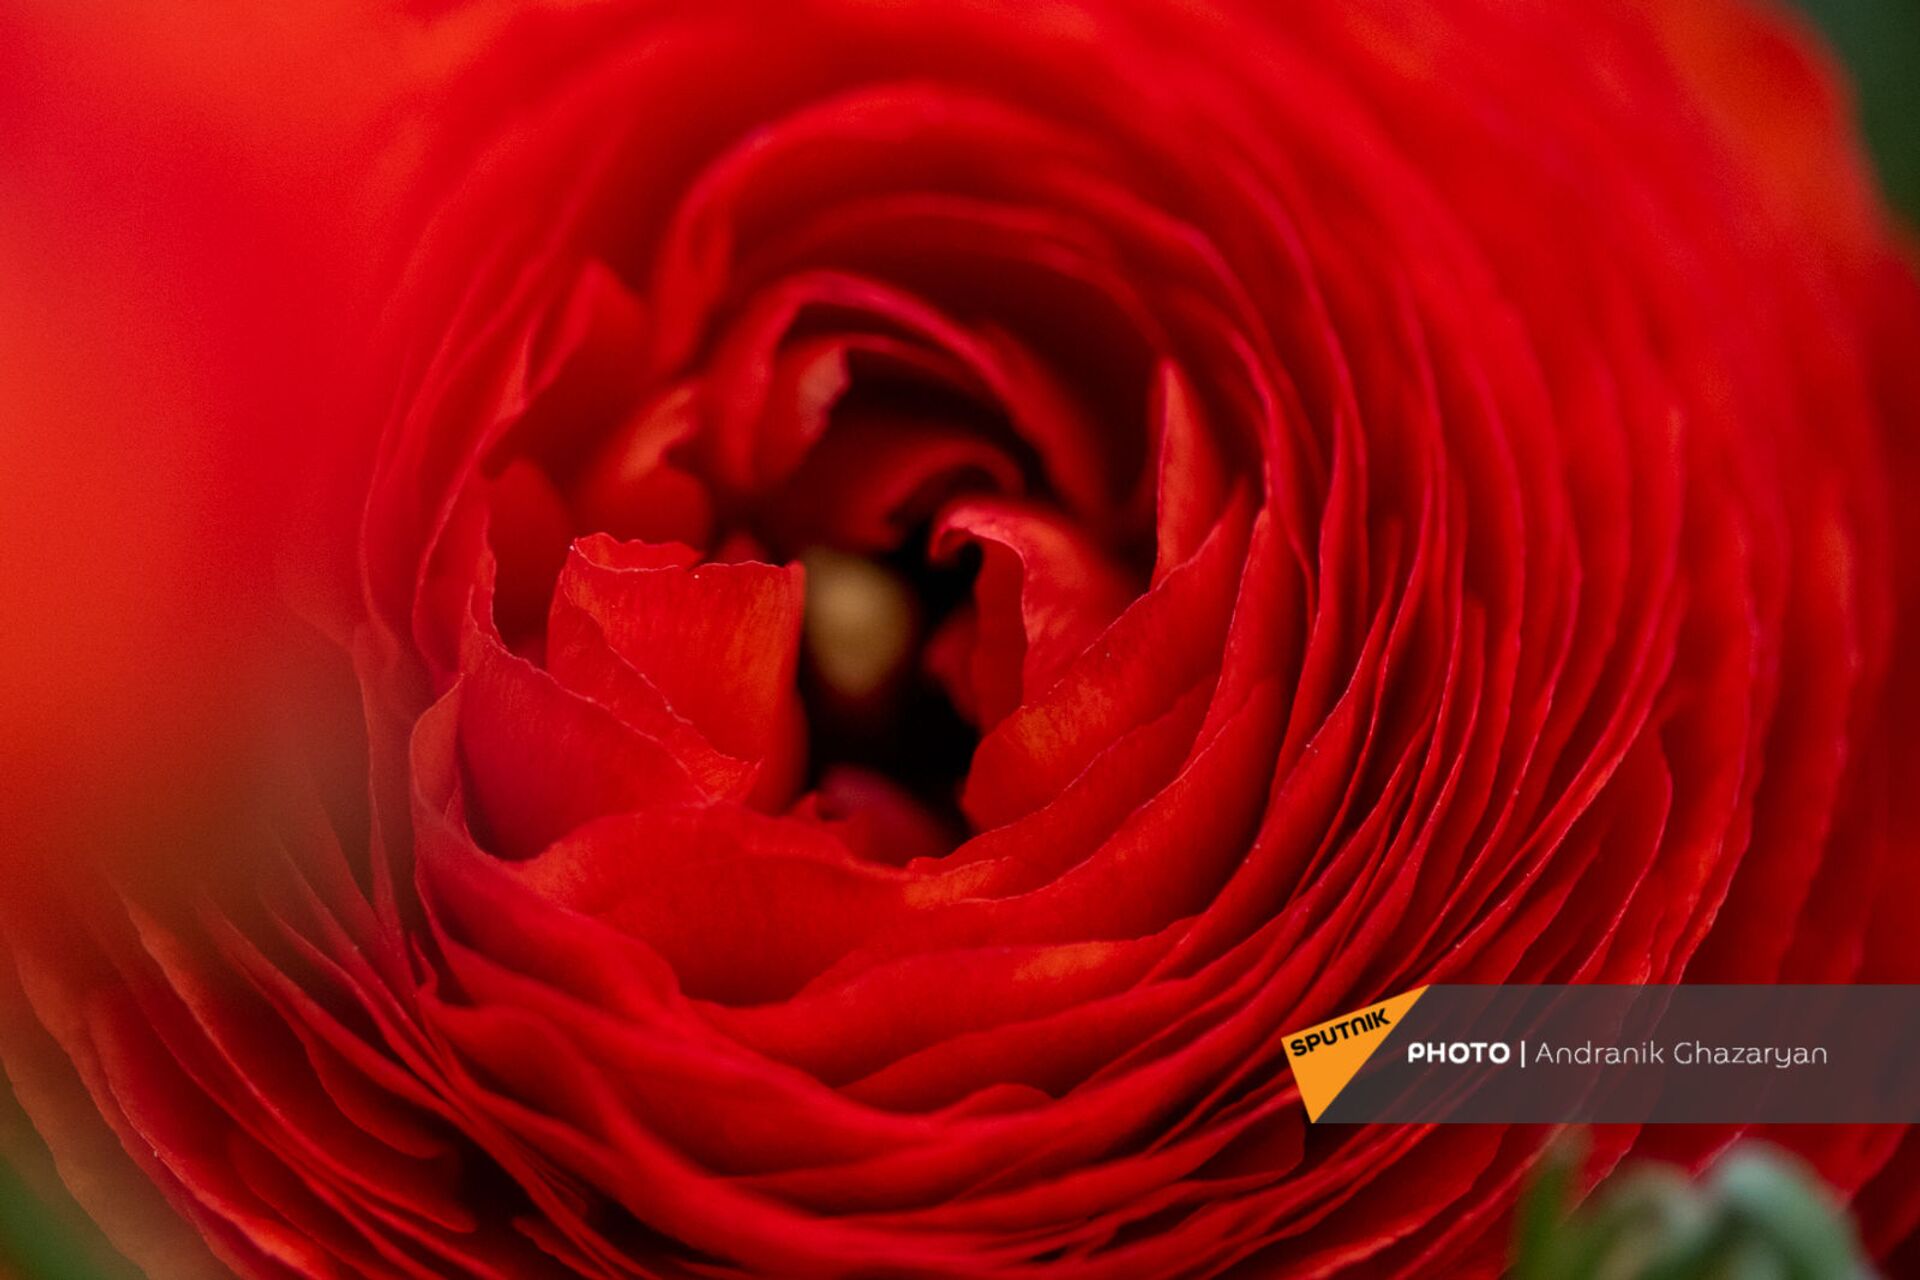 Ծաղկավաճառ կնոջը երբեք ծաղիկ չեն նվիրում. «կիսահայաֆիկացված» վարդերը գրավել են շուկան - Sputnik Արմենիա, 1920, 08.03.2021